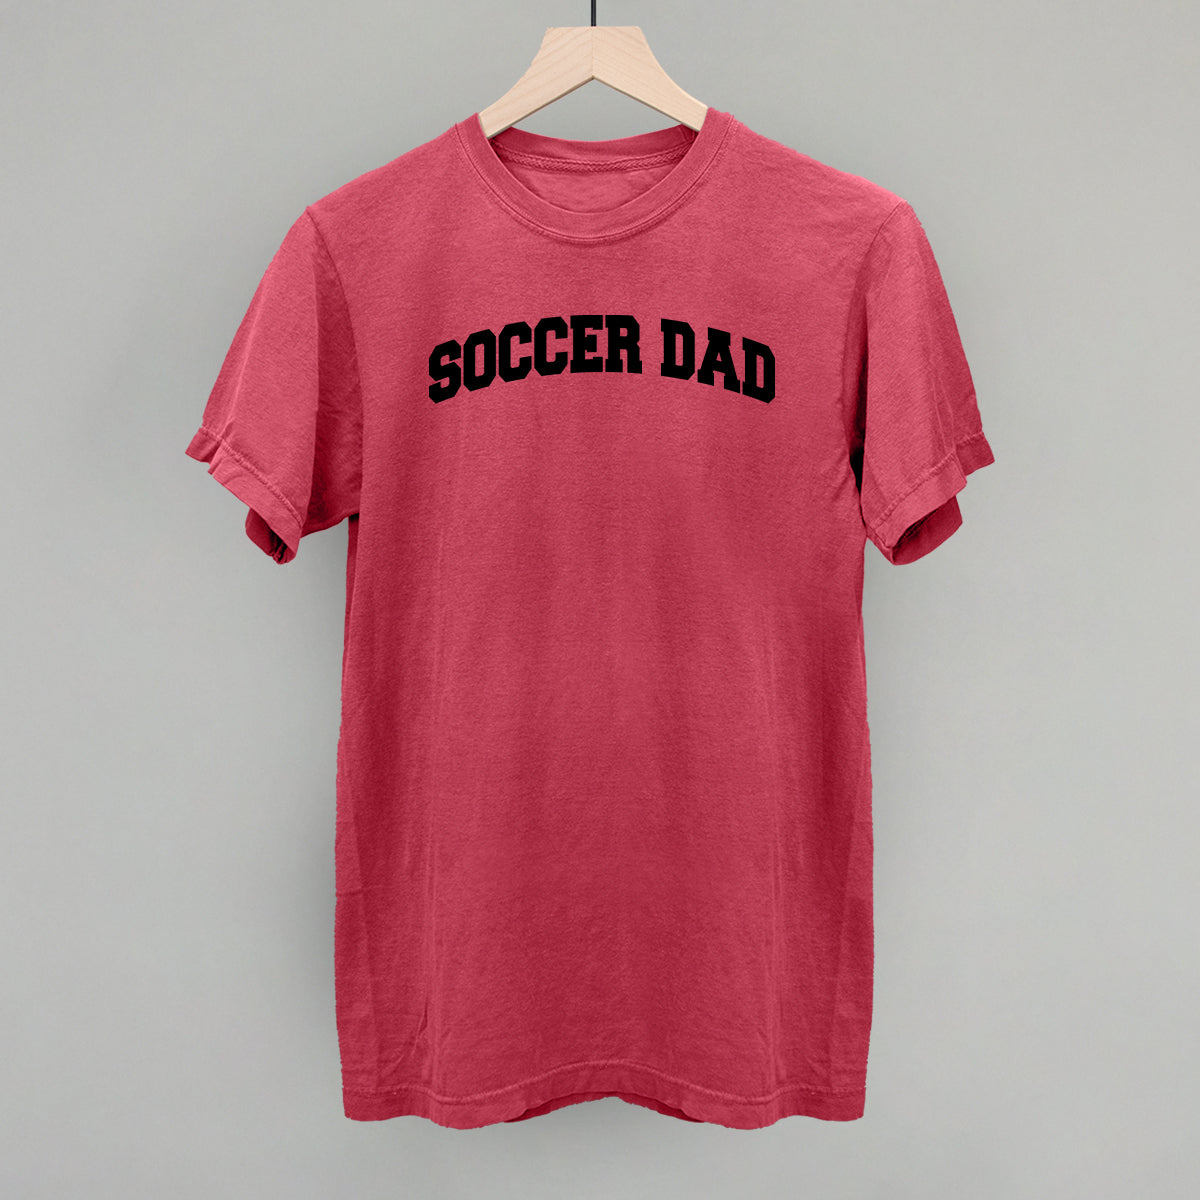 Soccer Dad (Collegiate)